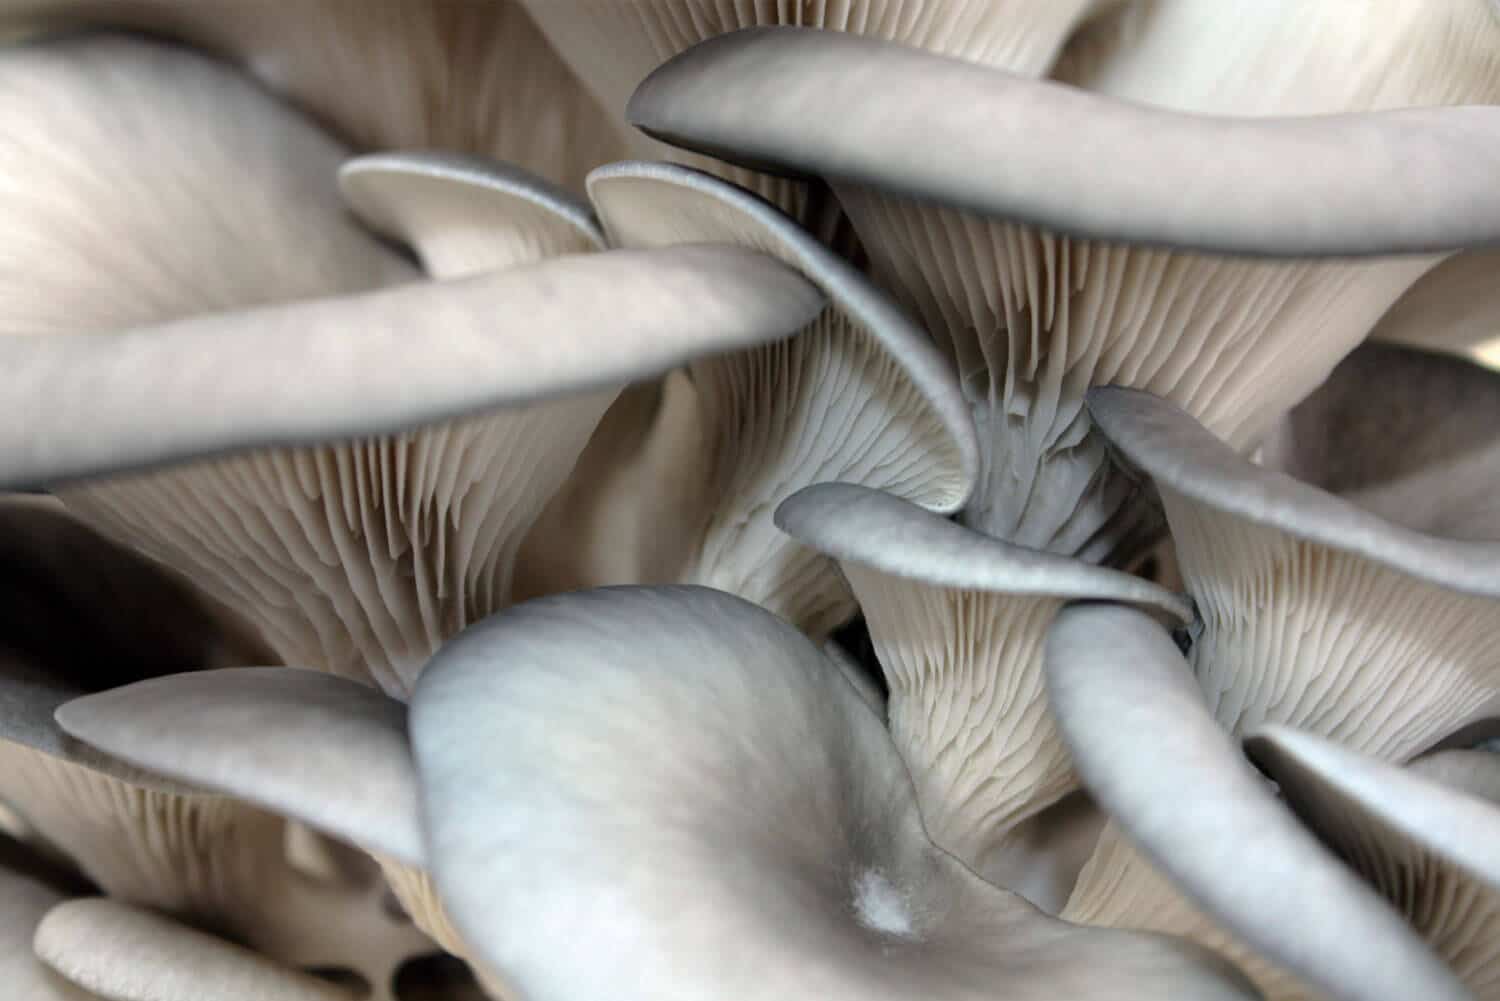 Oyster mushroom Pleurotus ostreatus